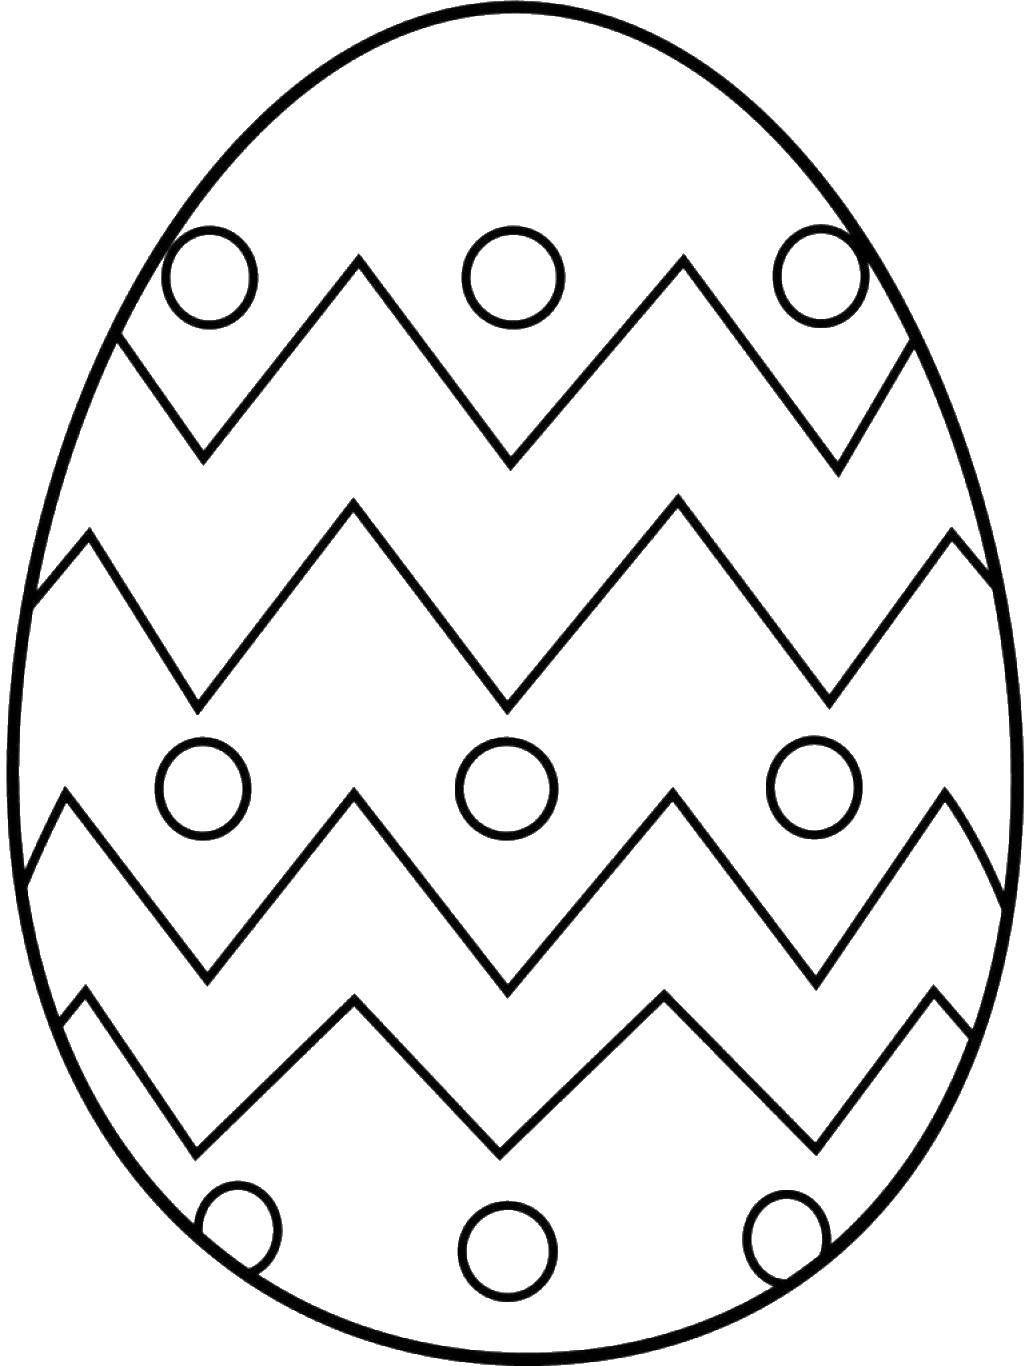 Название: Раскраска Разрисованное яйцо. Категория: Яйца. Теги: яйца, пасха, узоры.